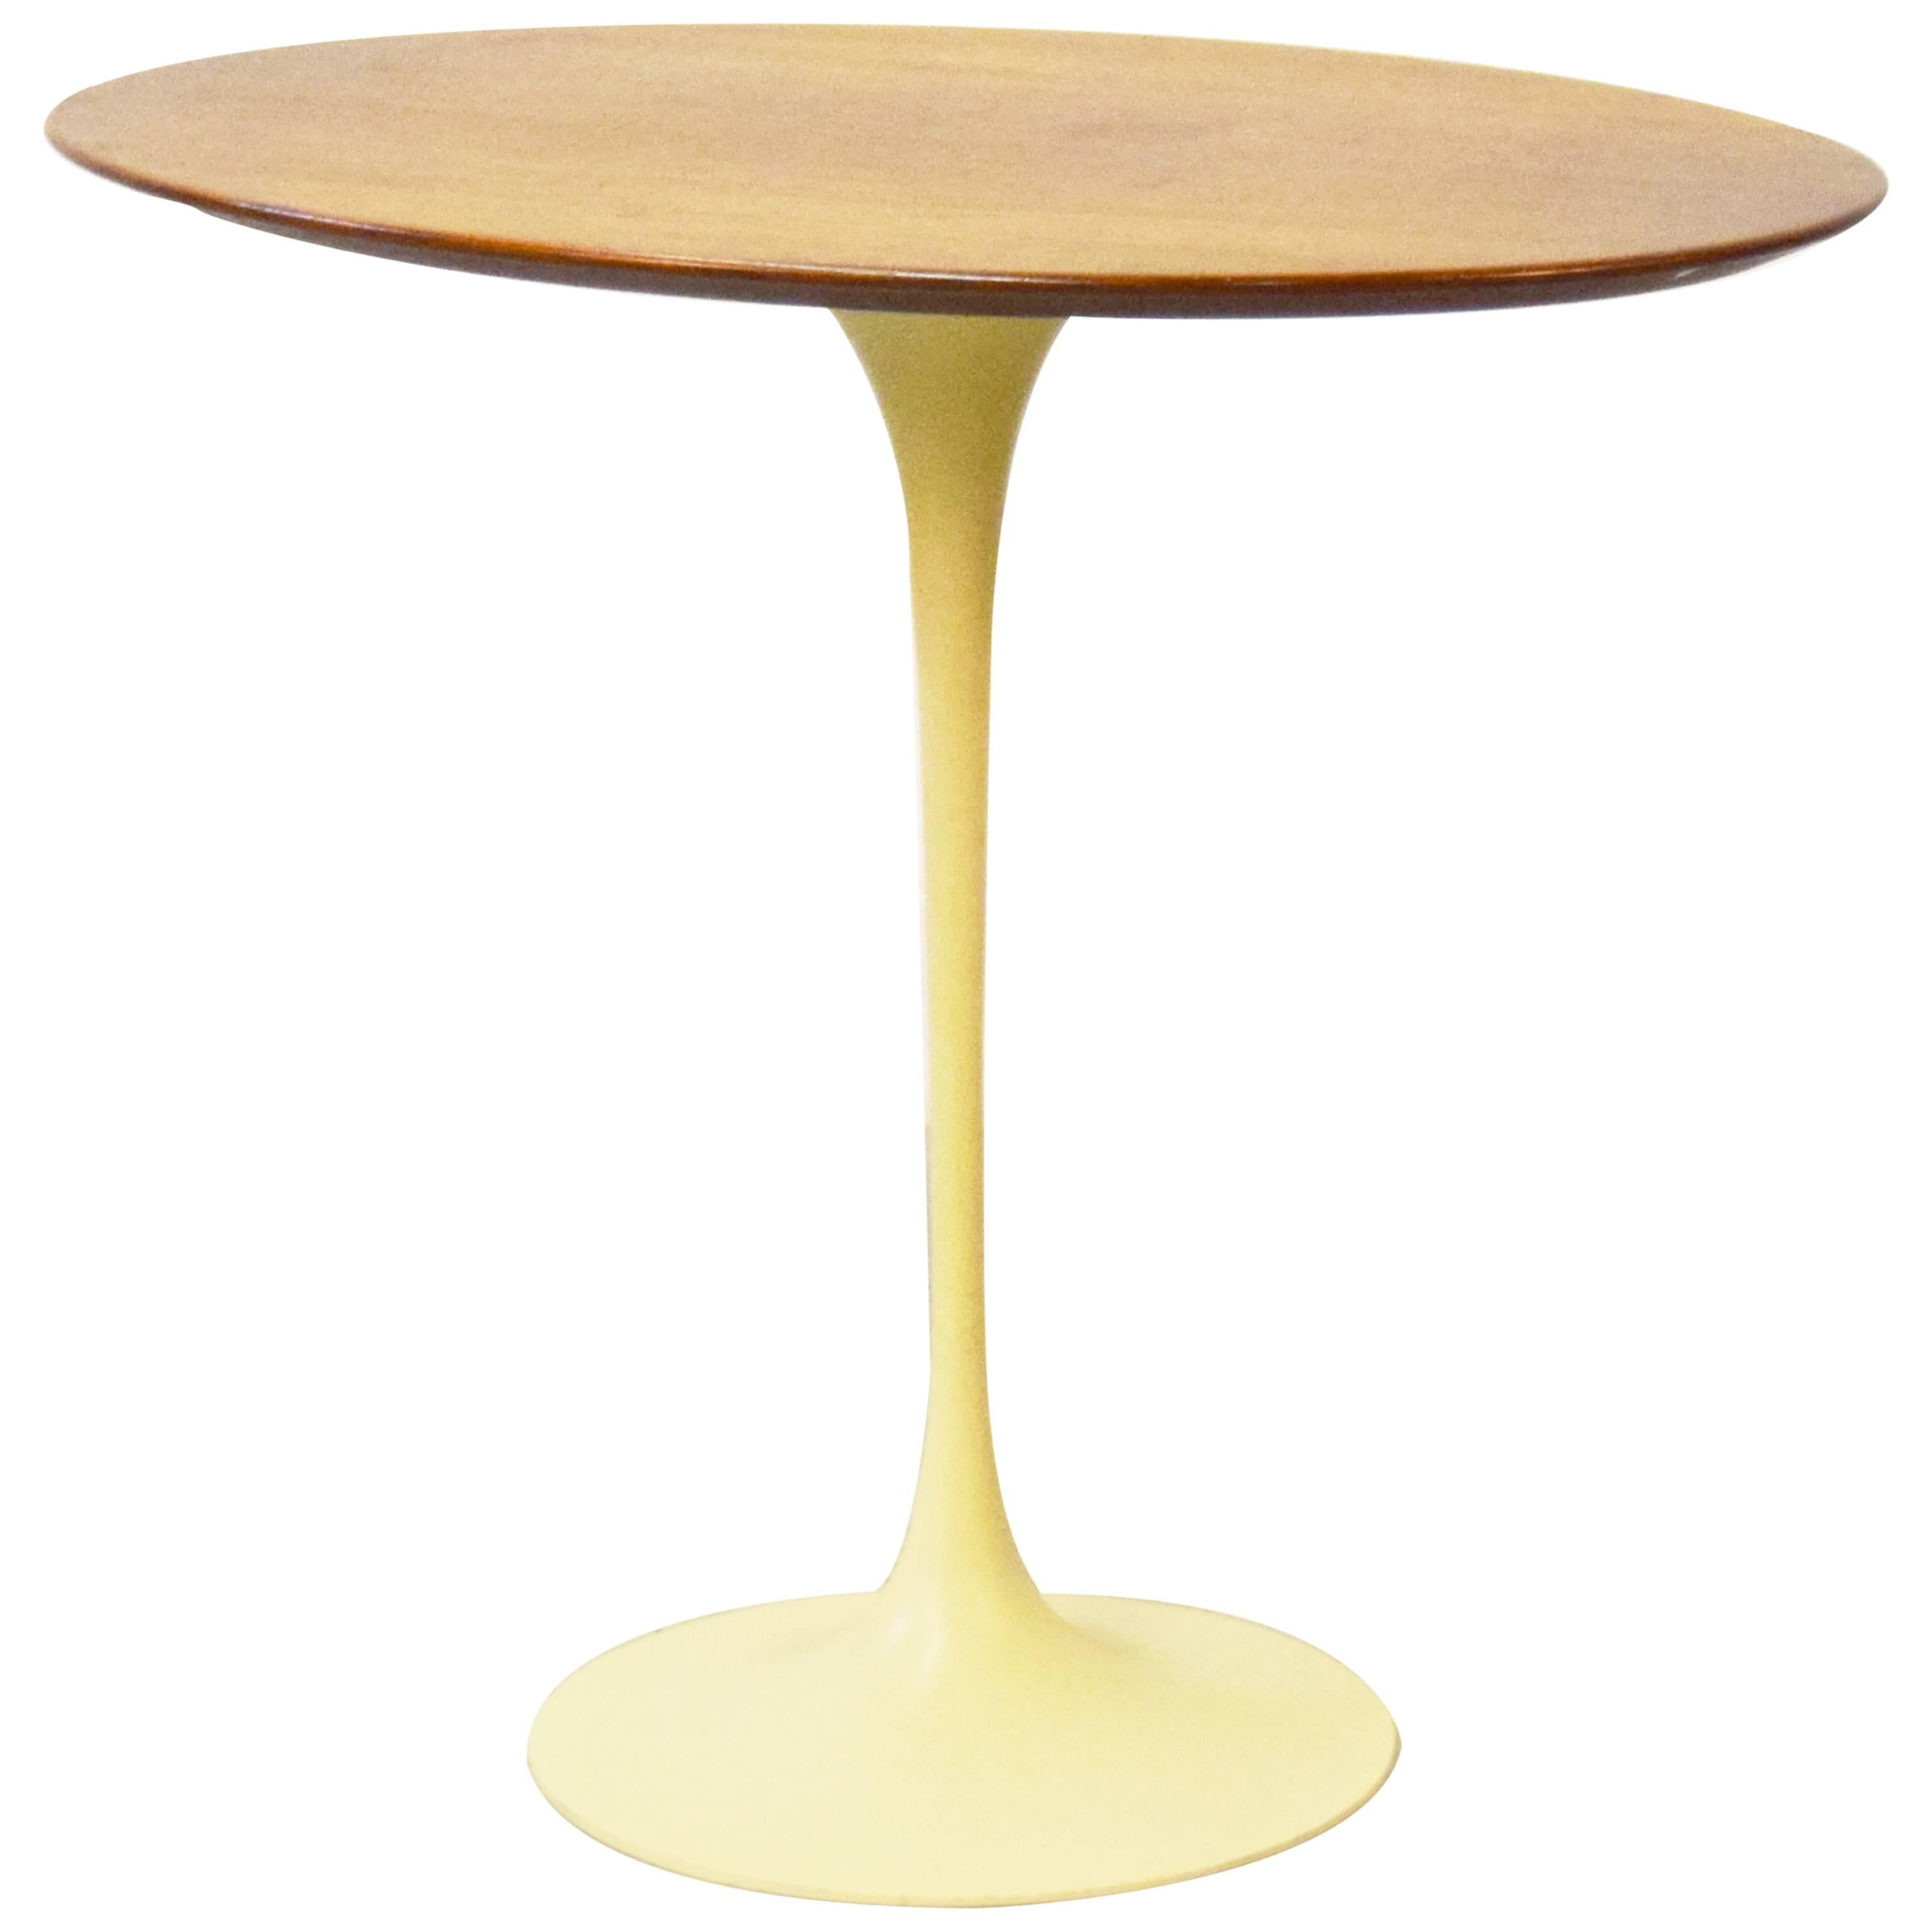 Early Eero Saarinen for Knoll Oval Tulip Side Table